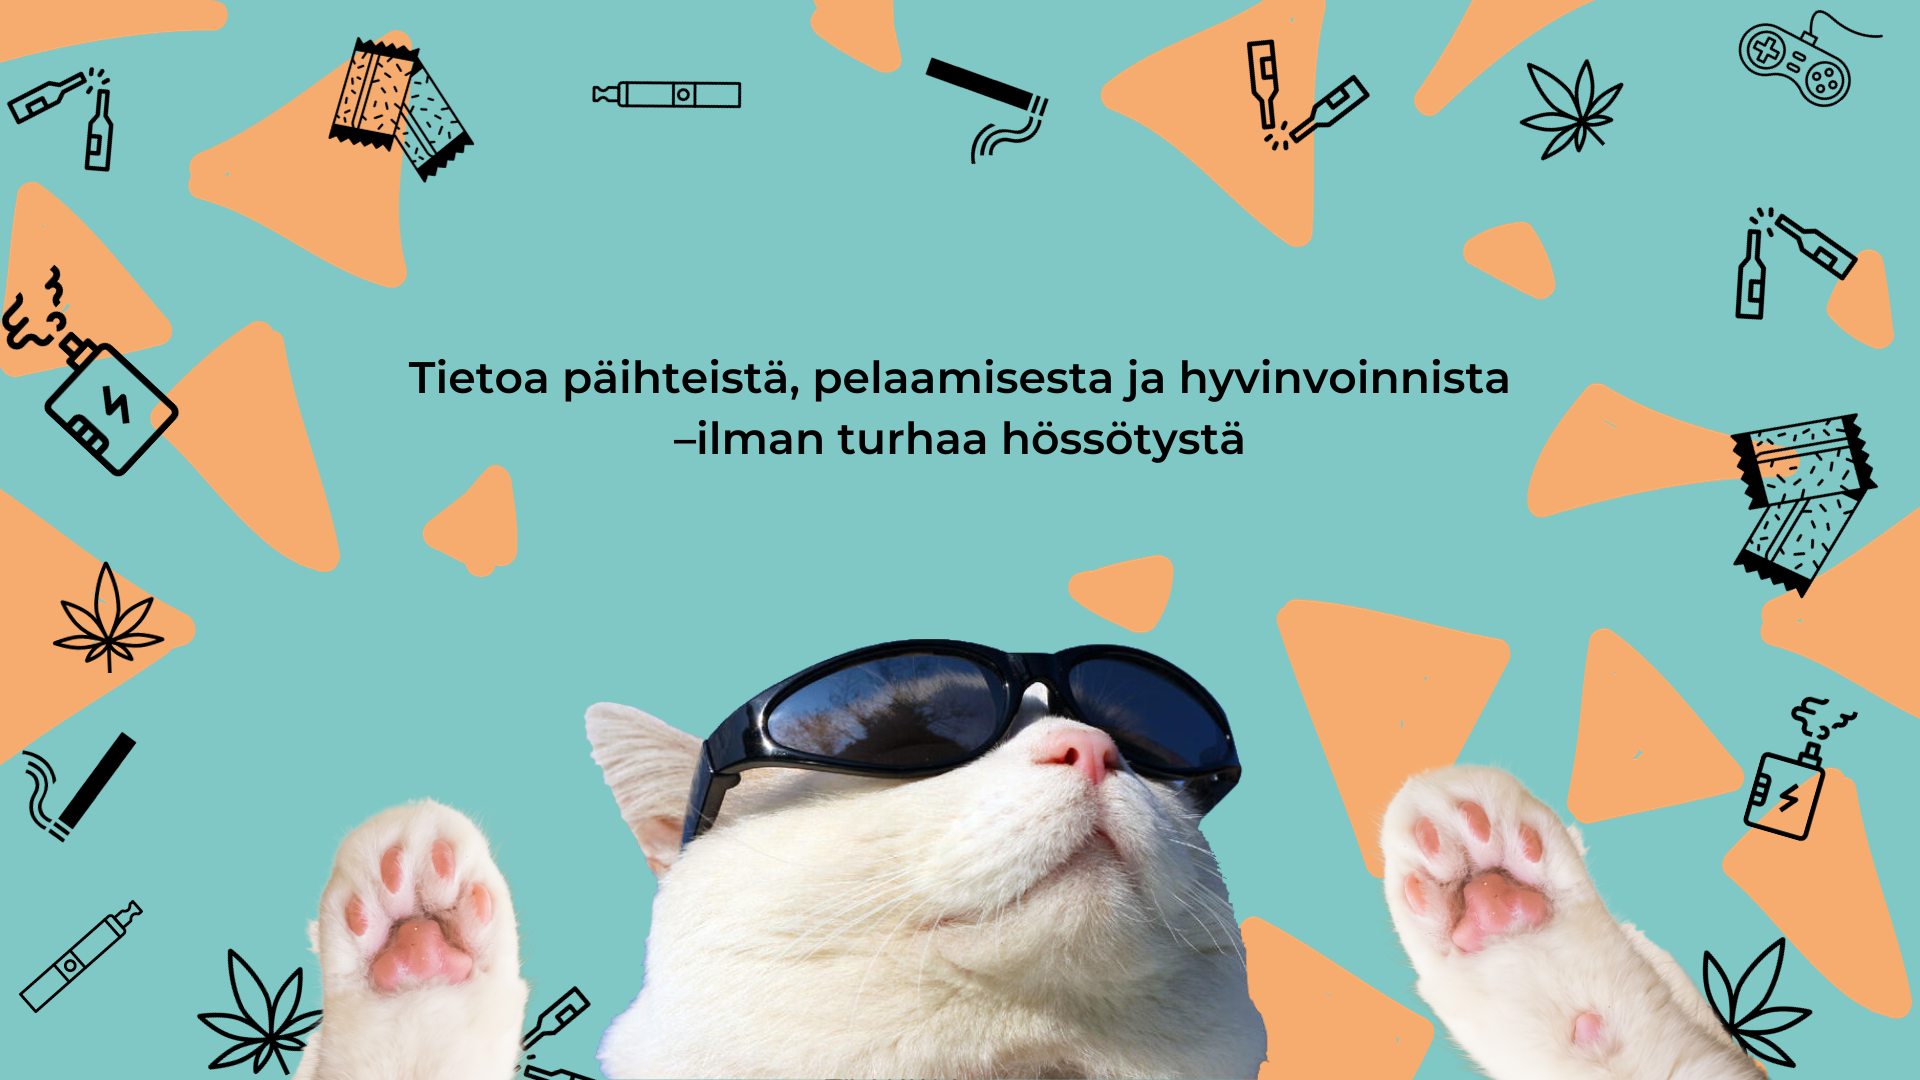 Auronko lasit päässä oleva kissa ja teksti: Tietoa päihteistä, pelaamisesta ja hyvinvoinnista - ilman turhaa hössötystä.